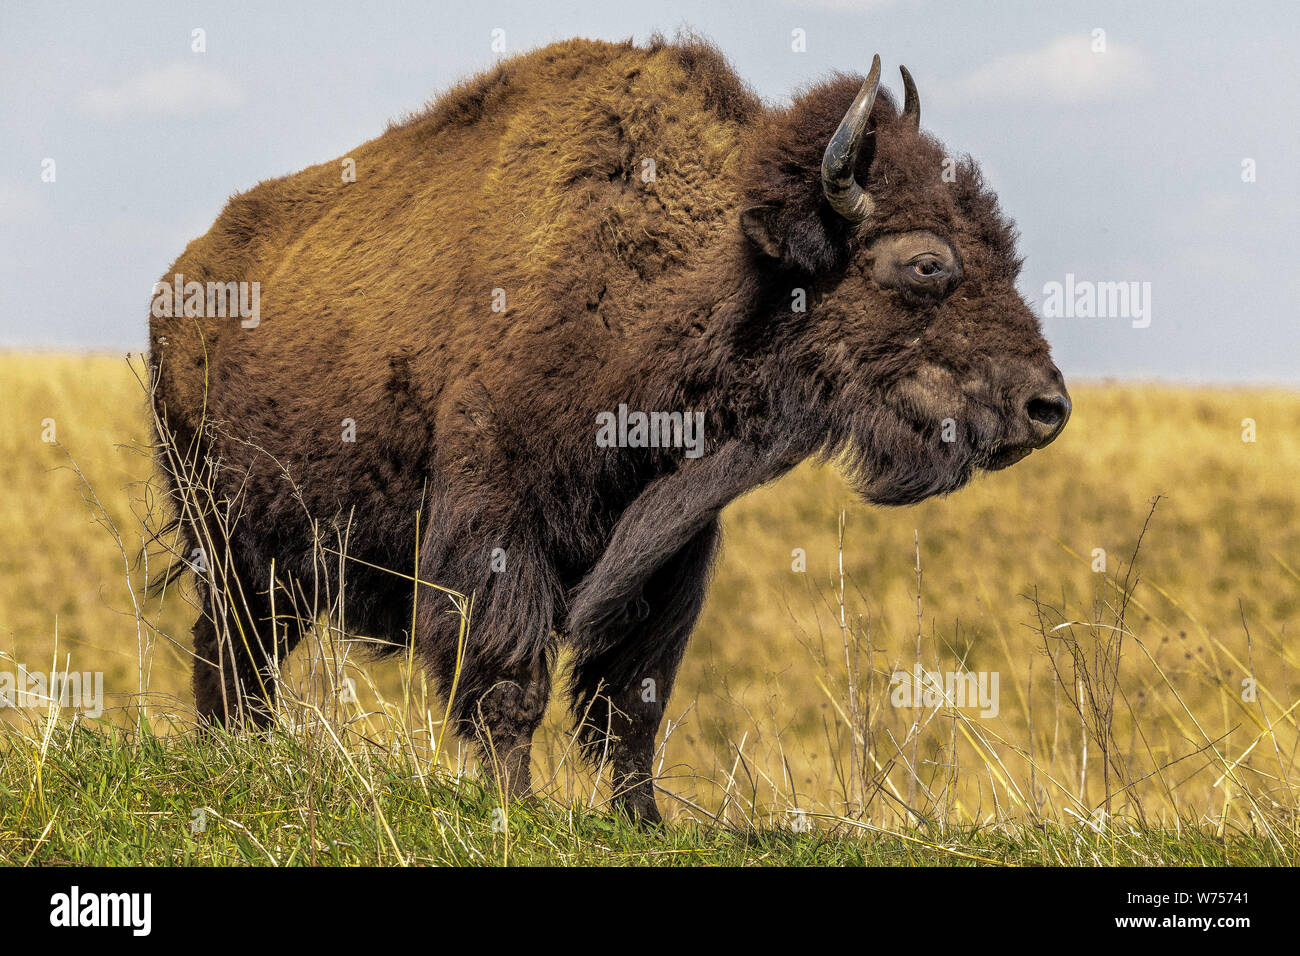 Grandi bufali con corna in piedi in un campo di erba con cielo blu Foto Stock